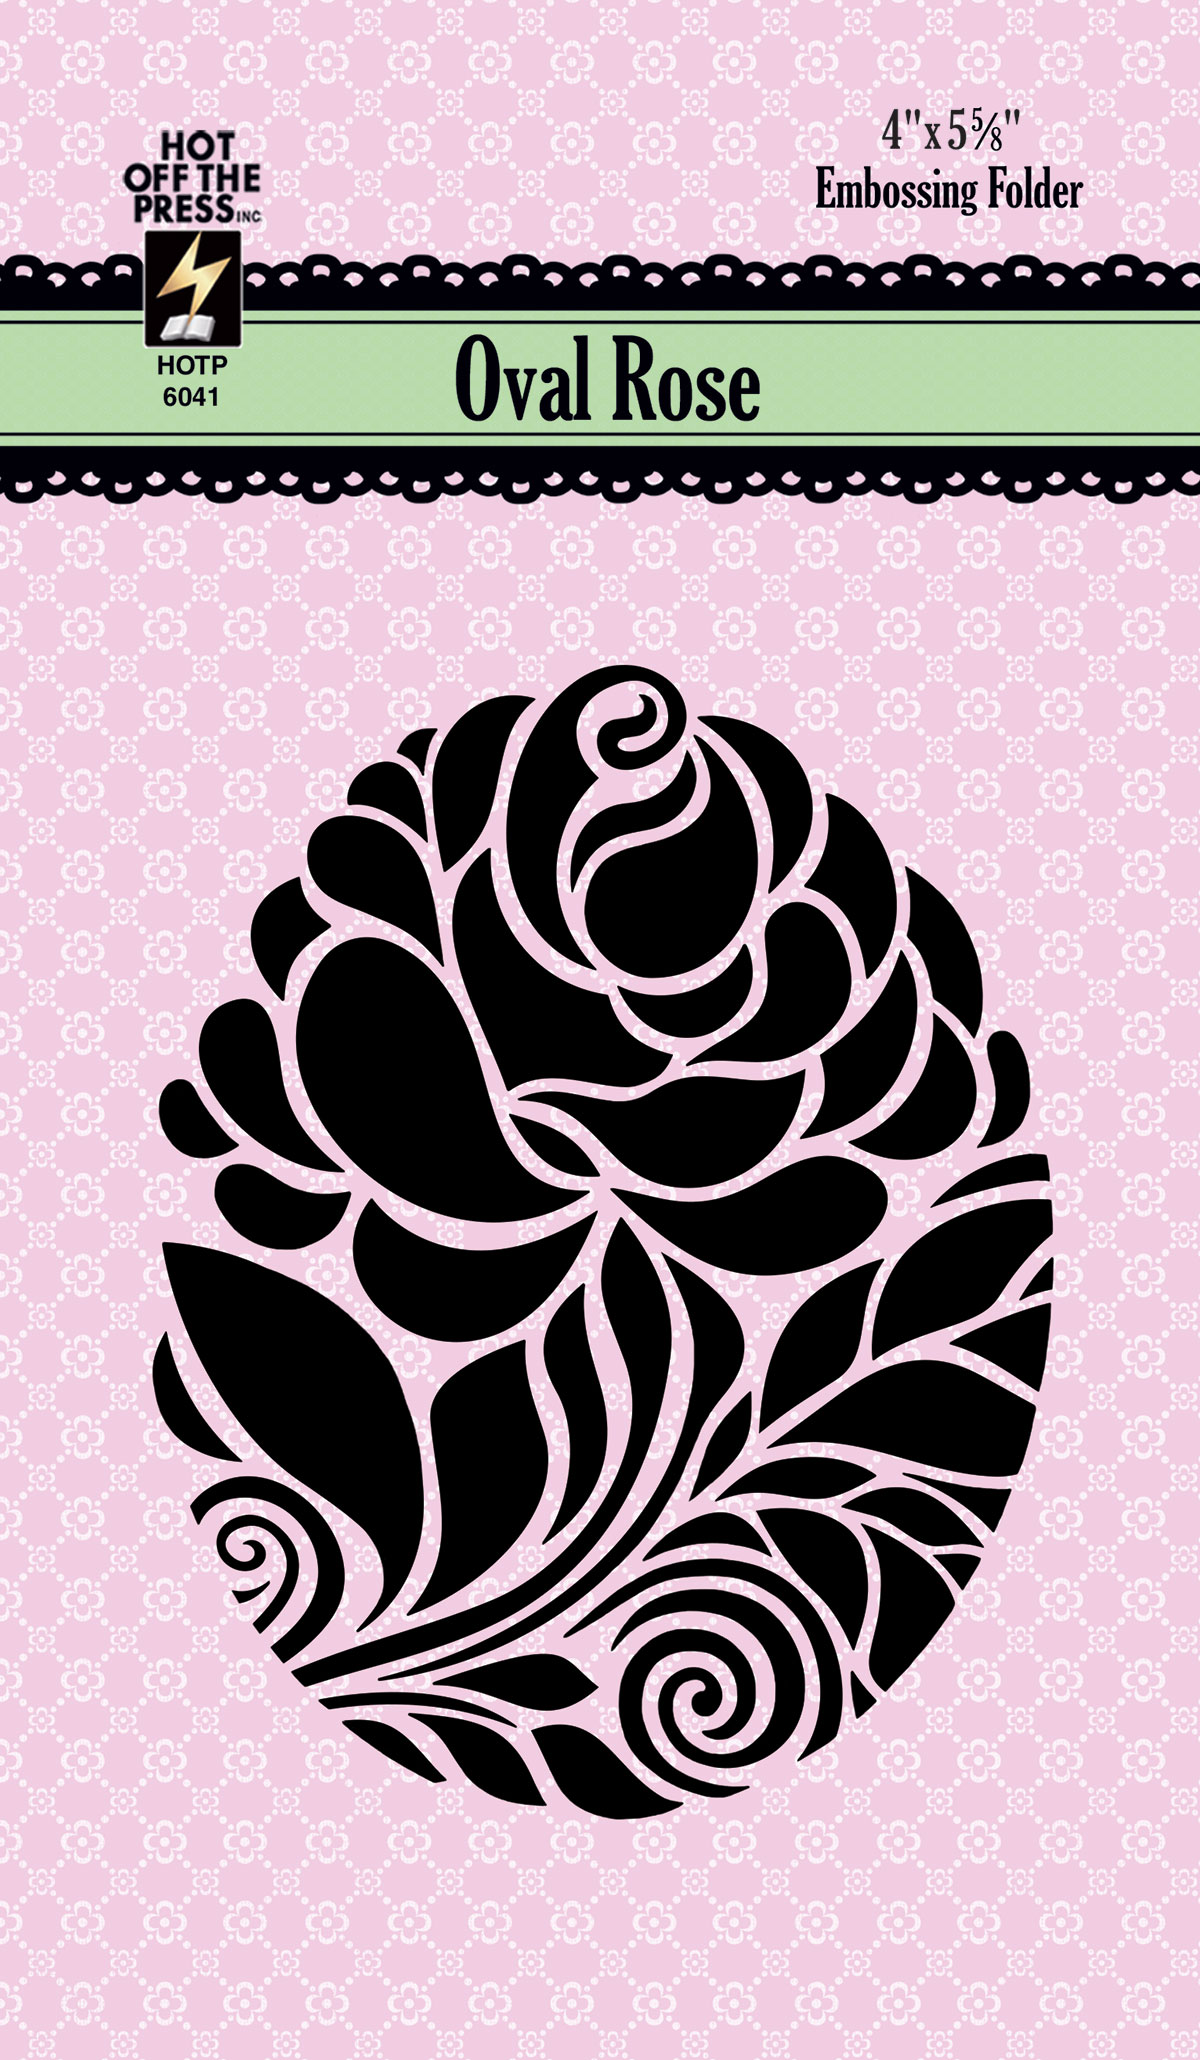 Oval Rose Embossing Folder